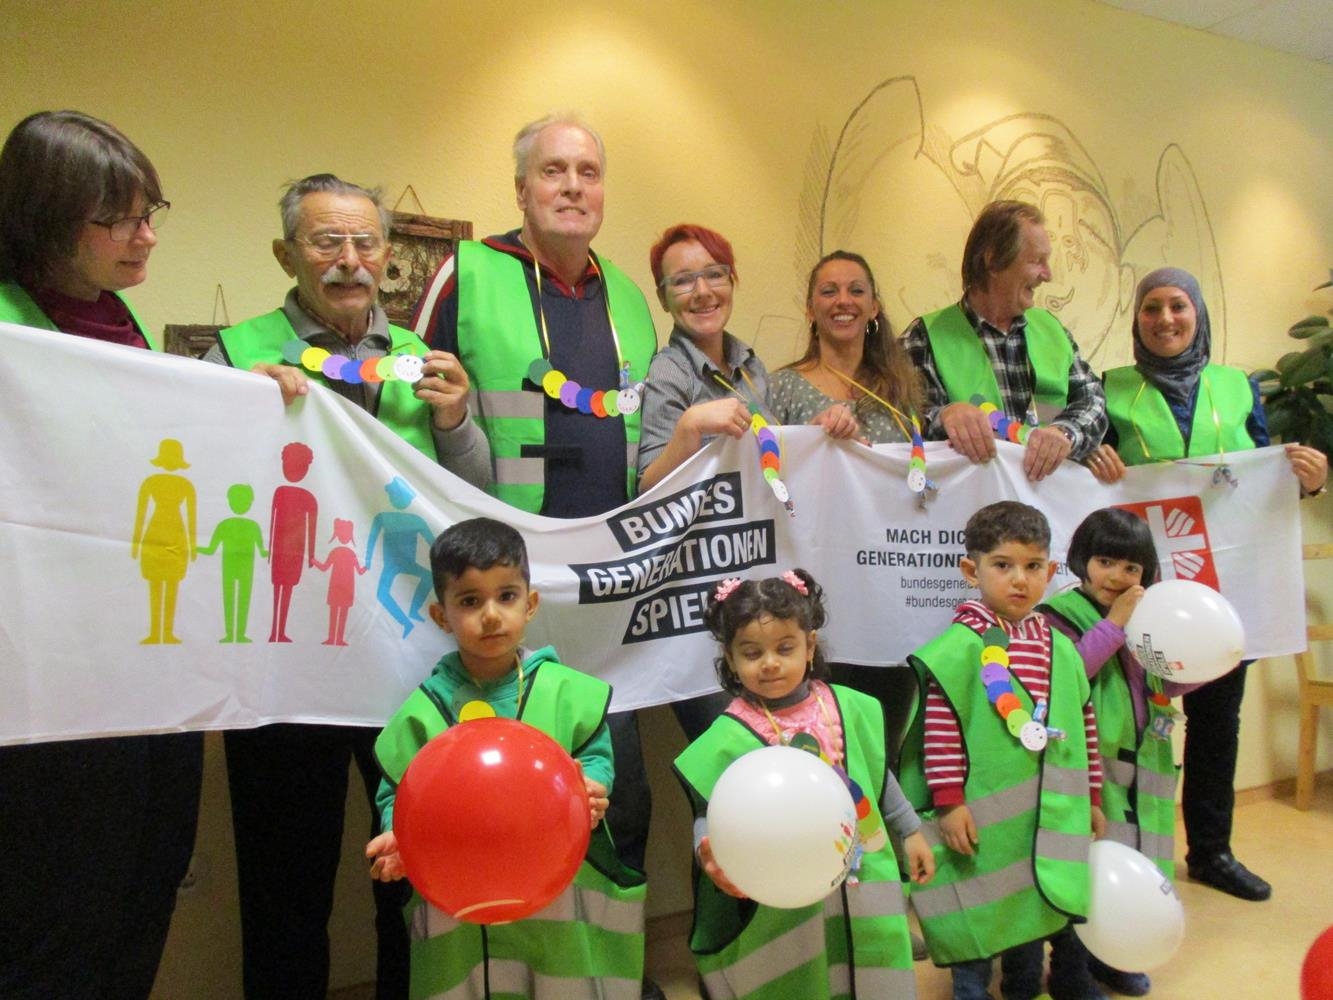 Gruppenfoto mit Erwachsenen und kleinen Kindern in grünen Westen und mit Banner. (Caritas Tagespflege Heilig Geist)